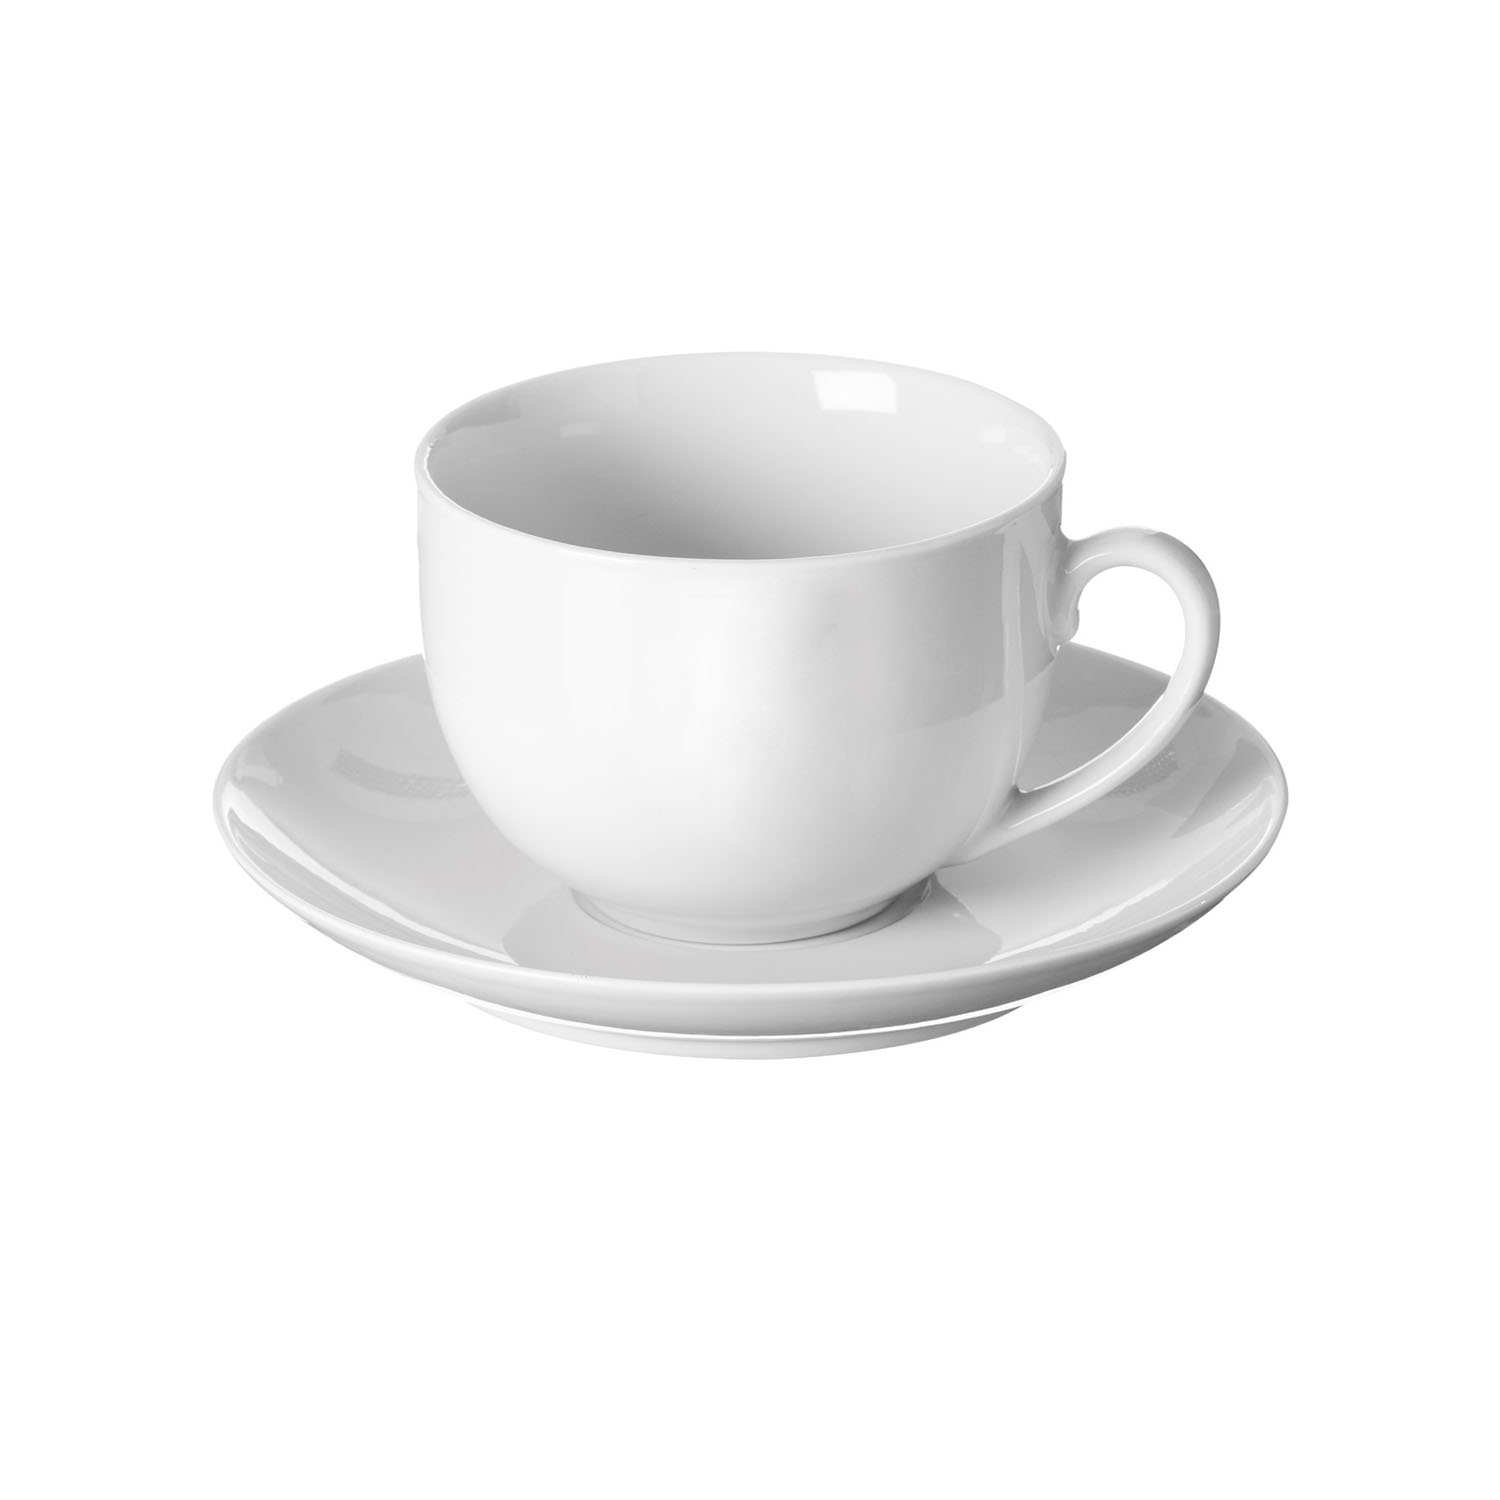 Price and Kensington Simplicity Teacup + Saucer